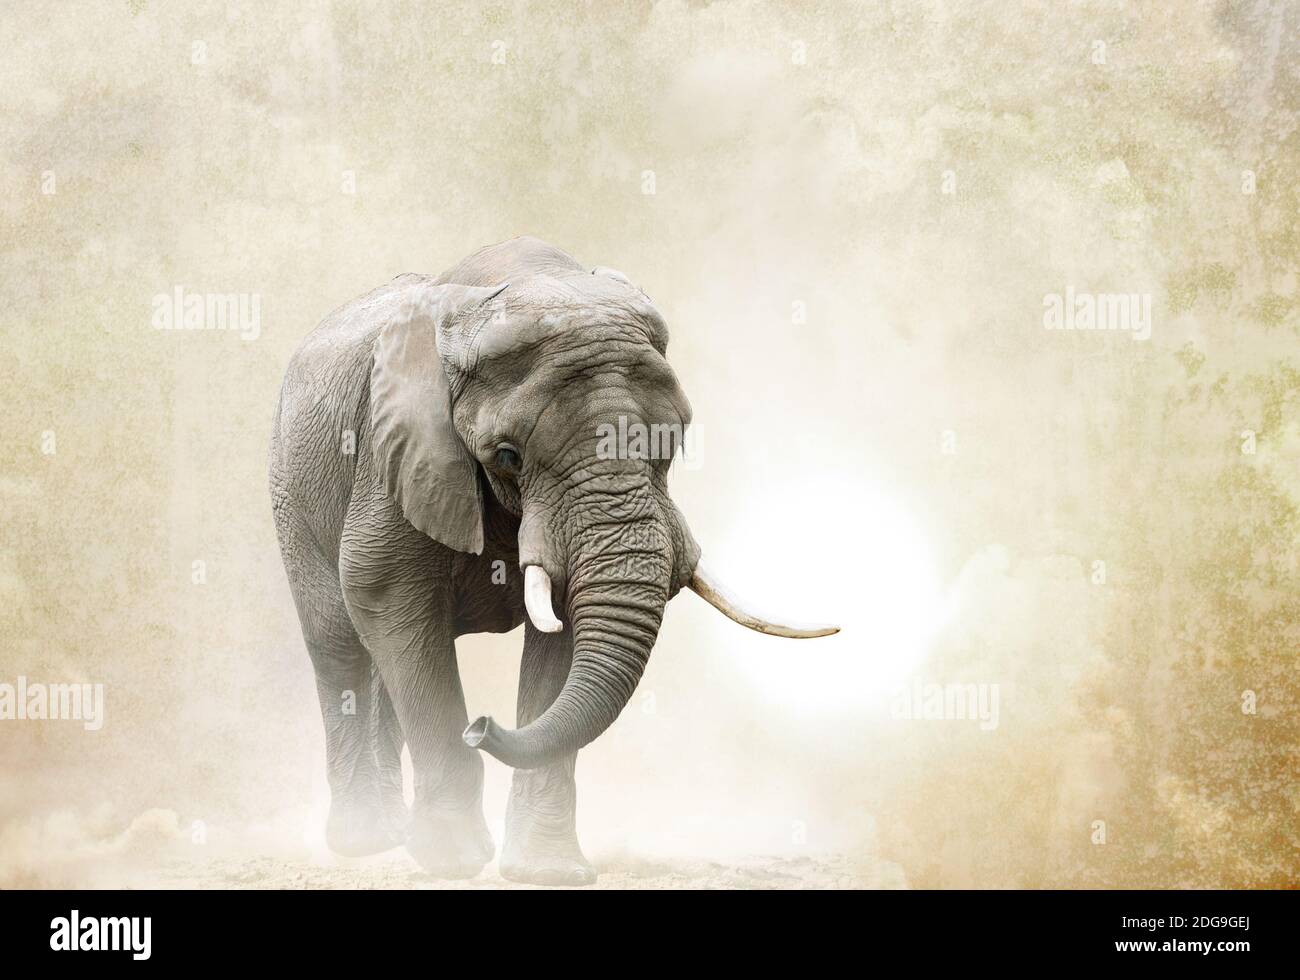 éléphant d'afrique marchant dans le désert sur un fond de grunge Banque D'Images